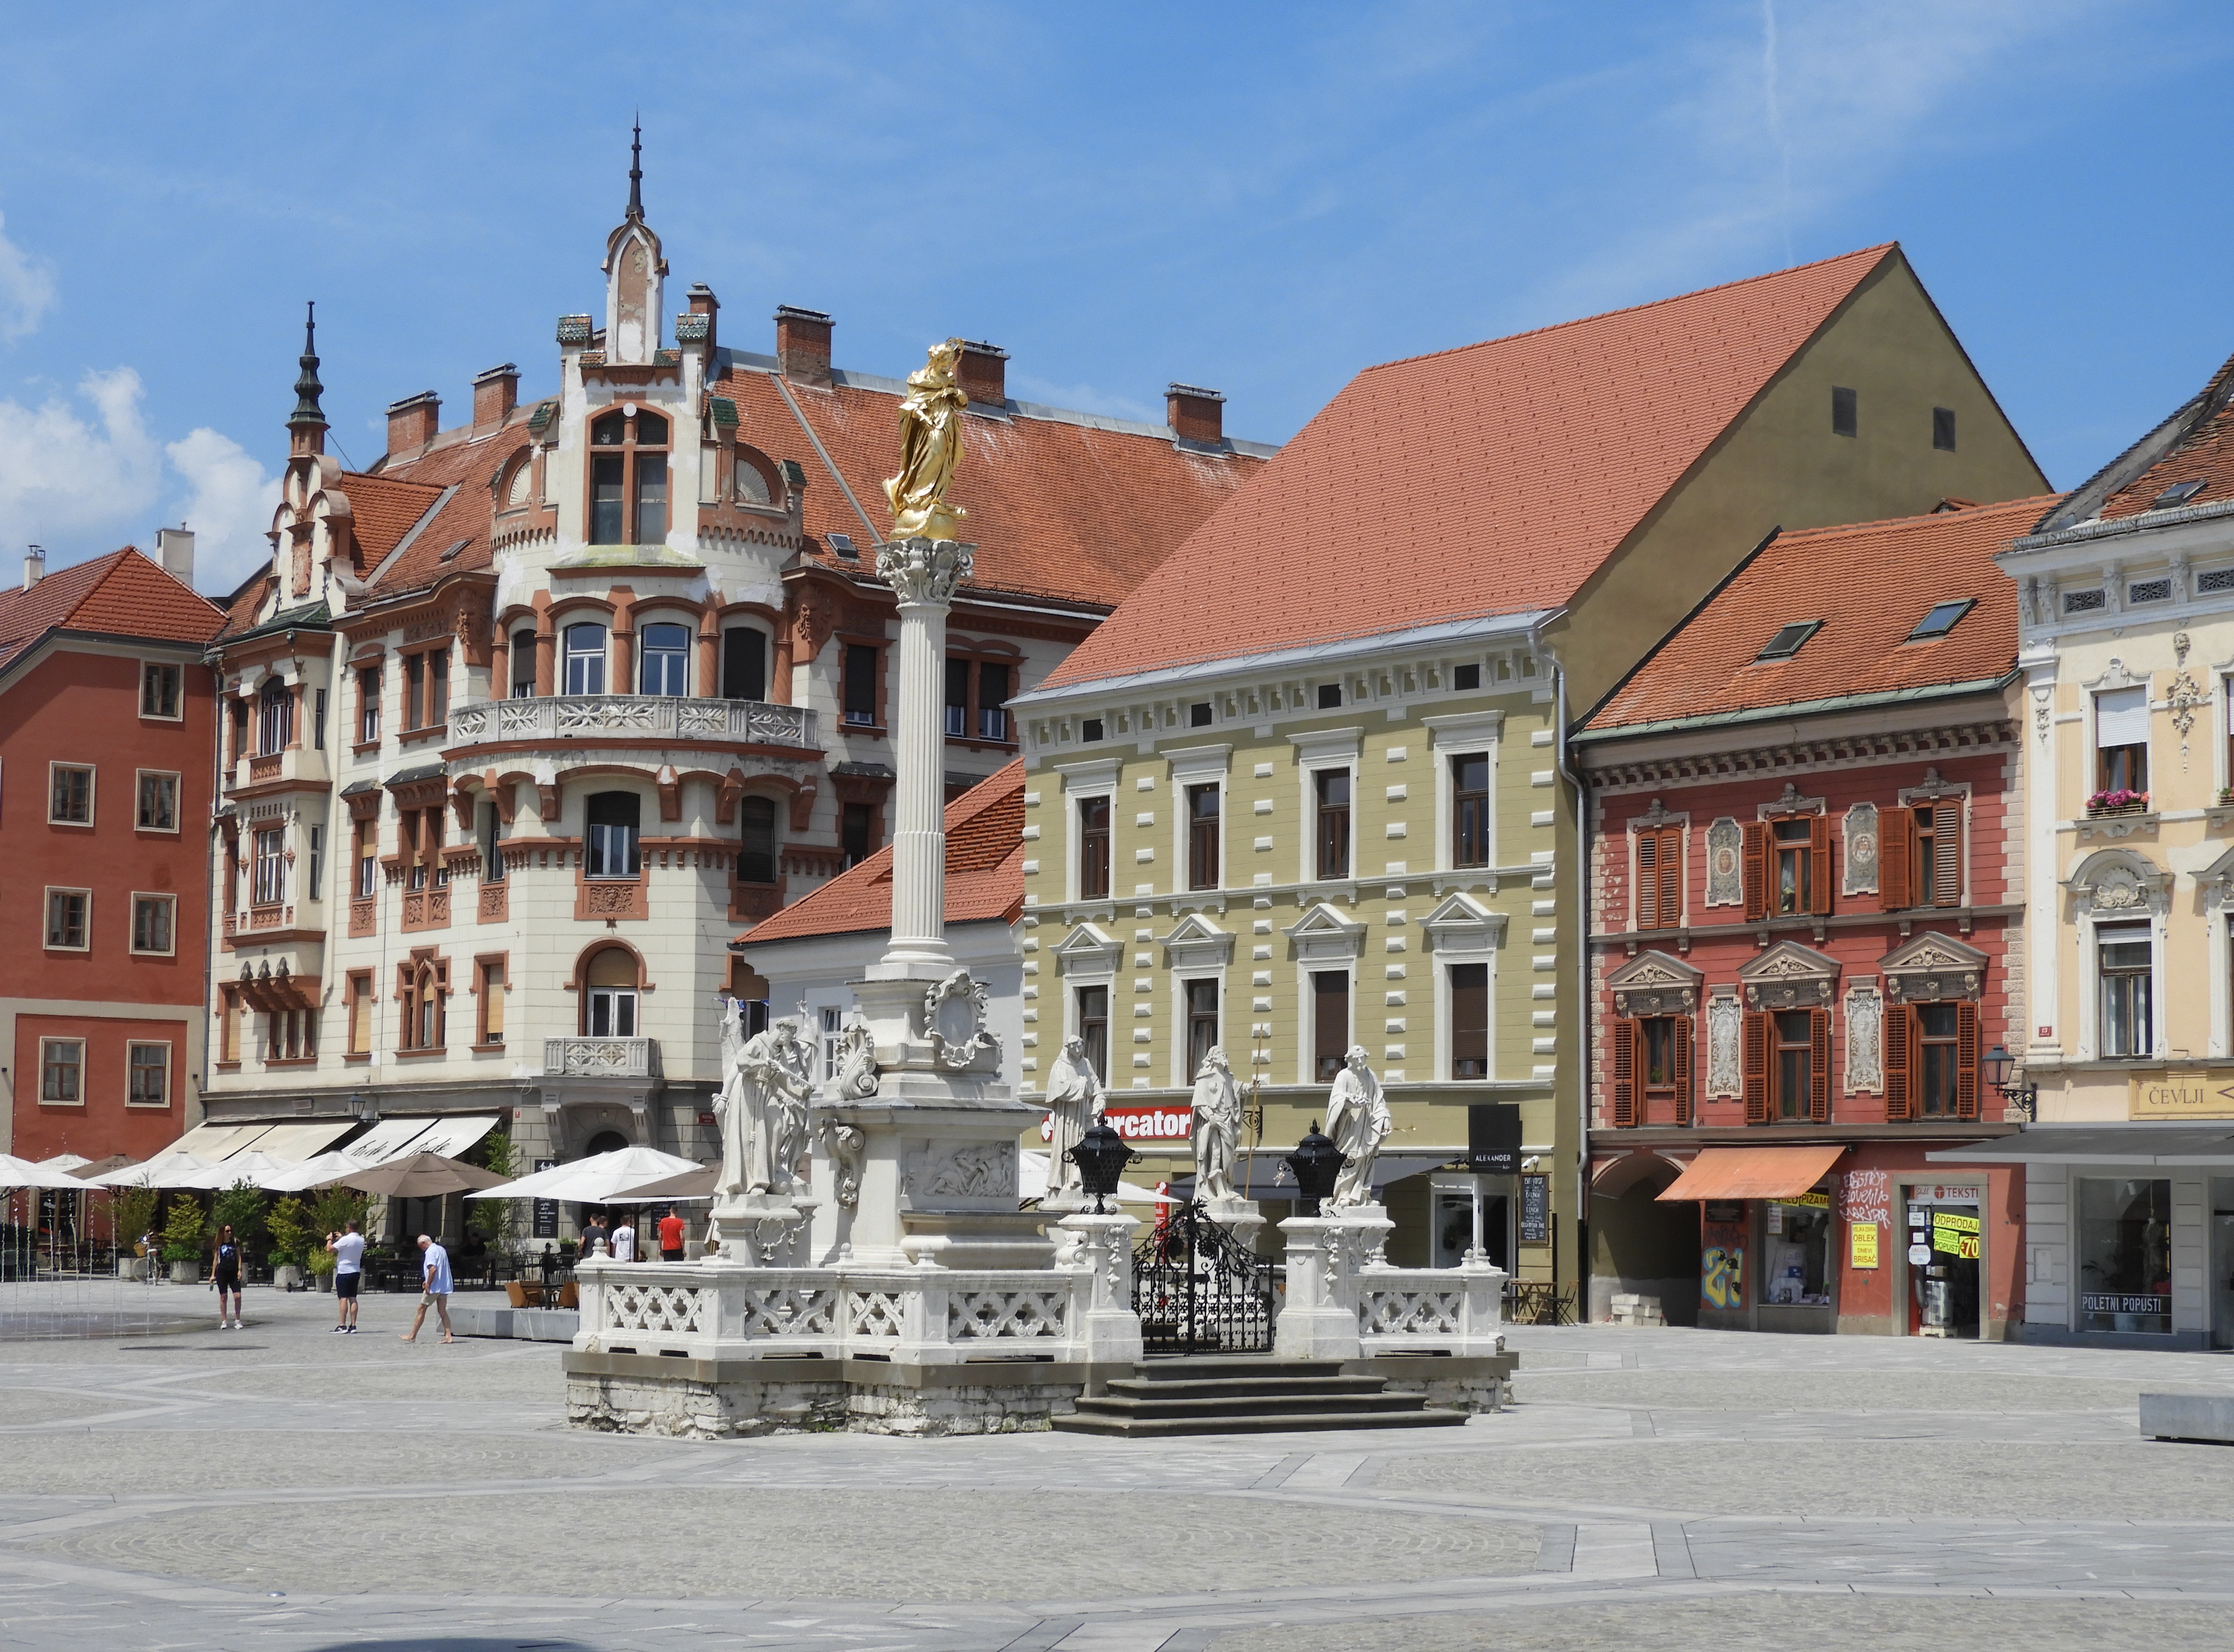 1218 - 11 - Piazza Glavni Trg a Maribor - Slovenia